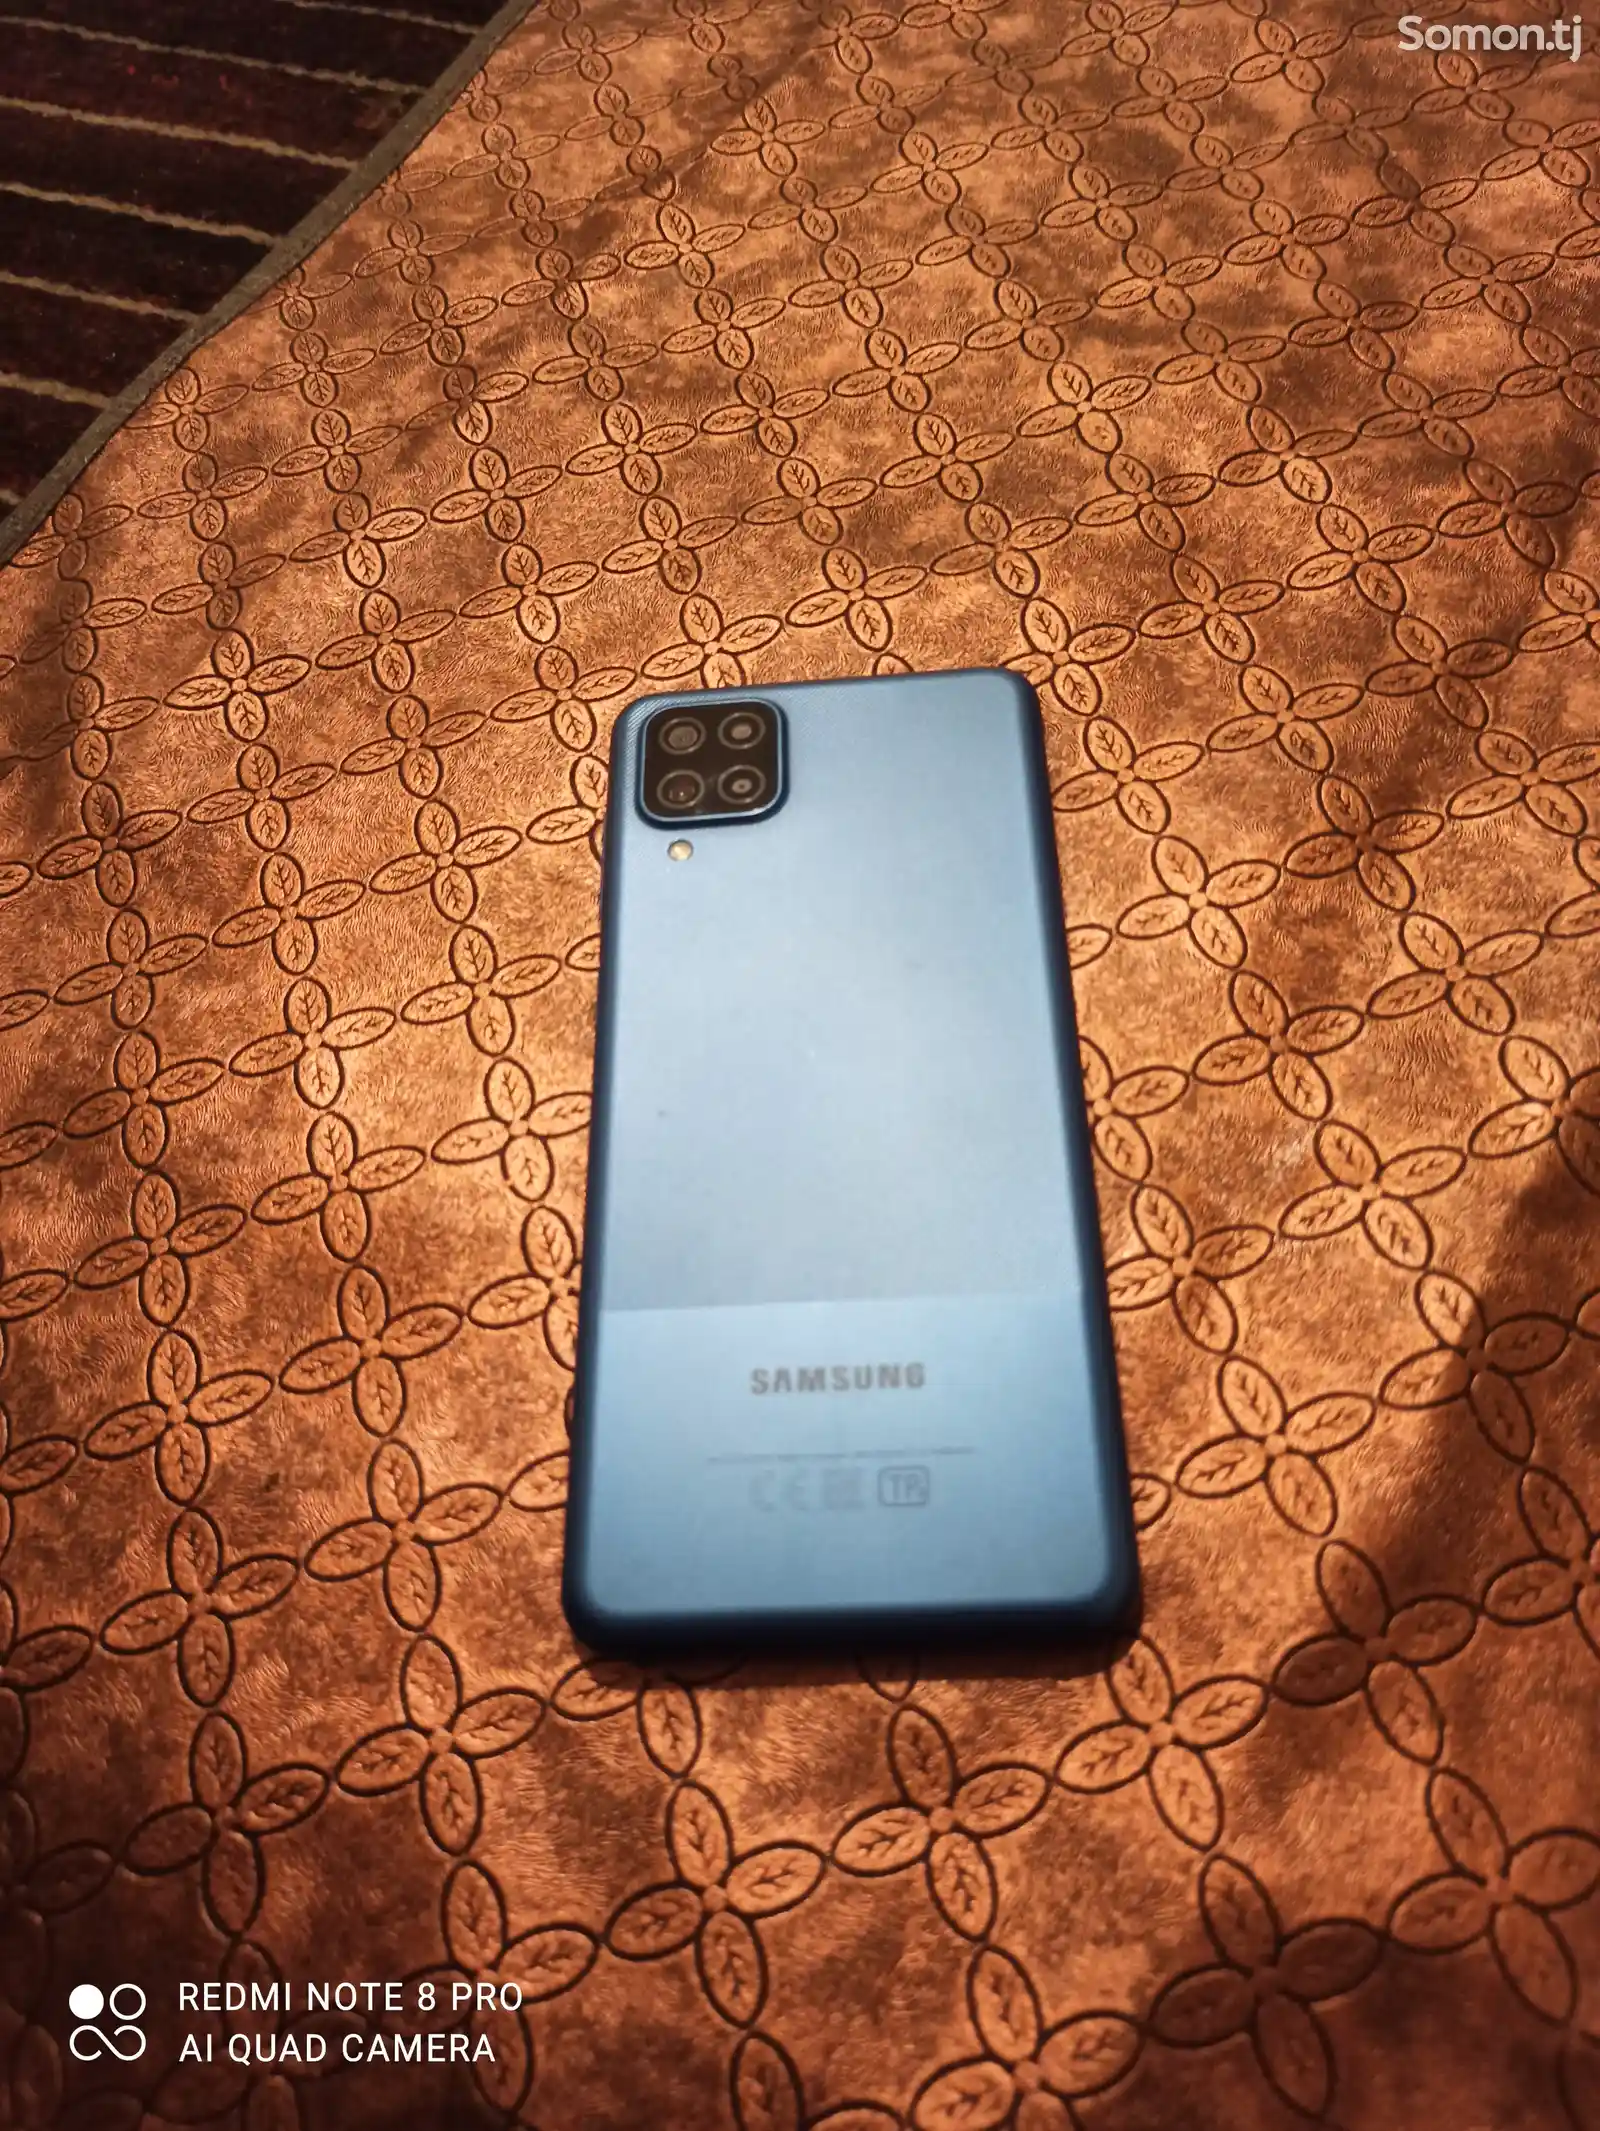 Samsung Galaxy A12-4